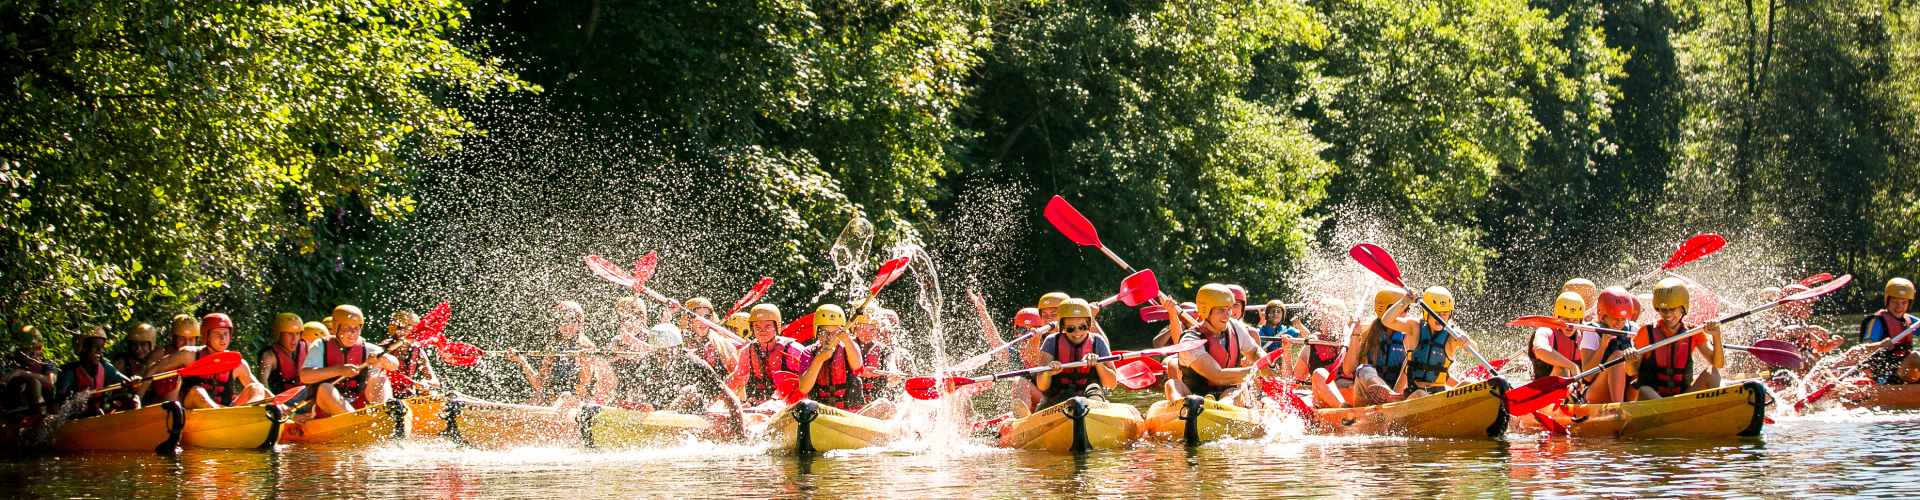 kano peddel helm zwemvest kanovaren Ourthe familievakantie gezin avontuur geweldig samenwerken zonnig